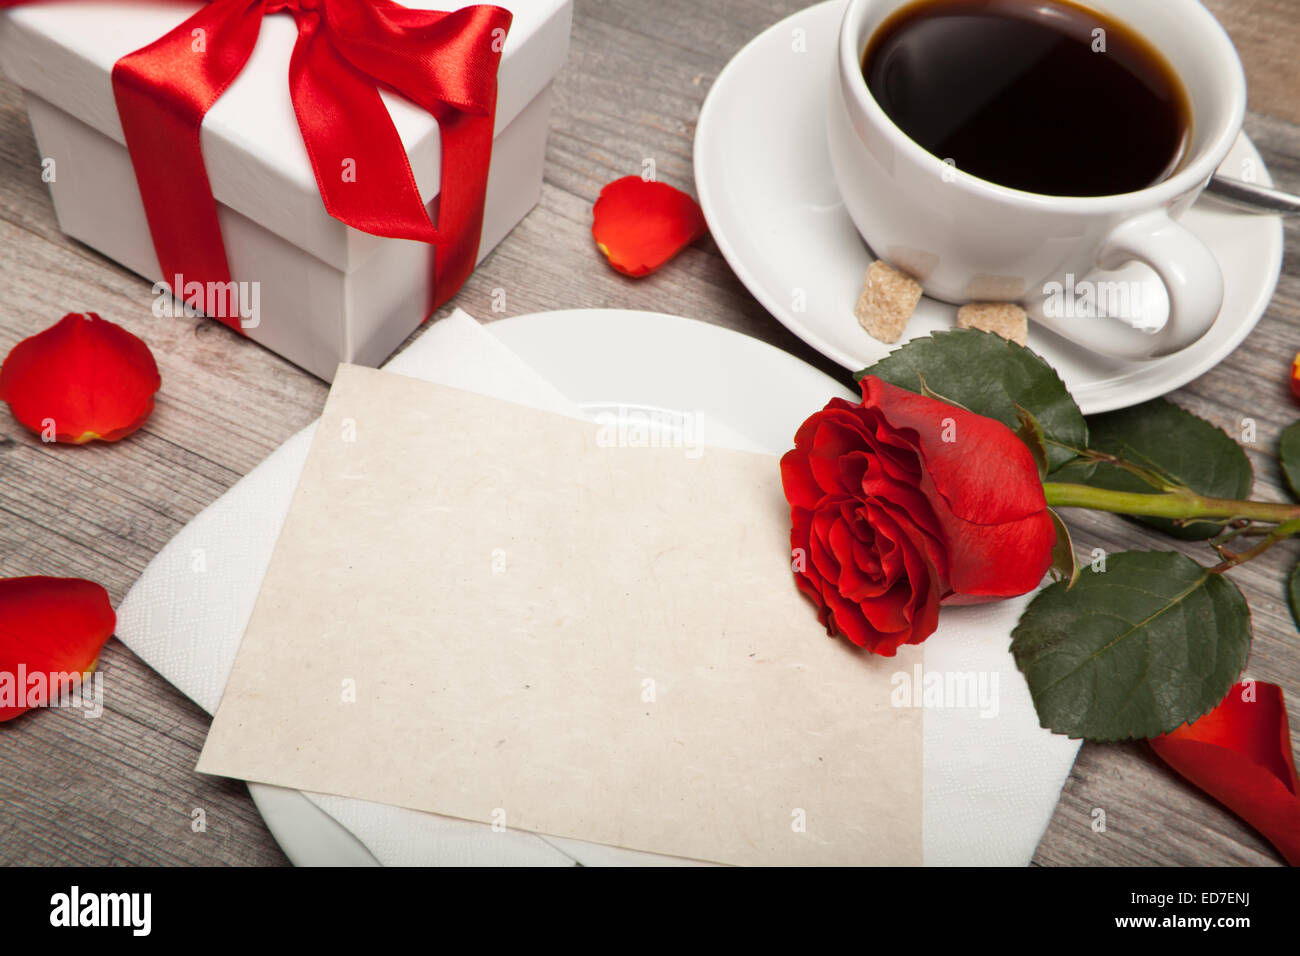 Cartolina sbozzato, una tazza di caffè e una rosa rossa sul tavolo Foto Stock